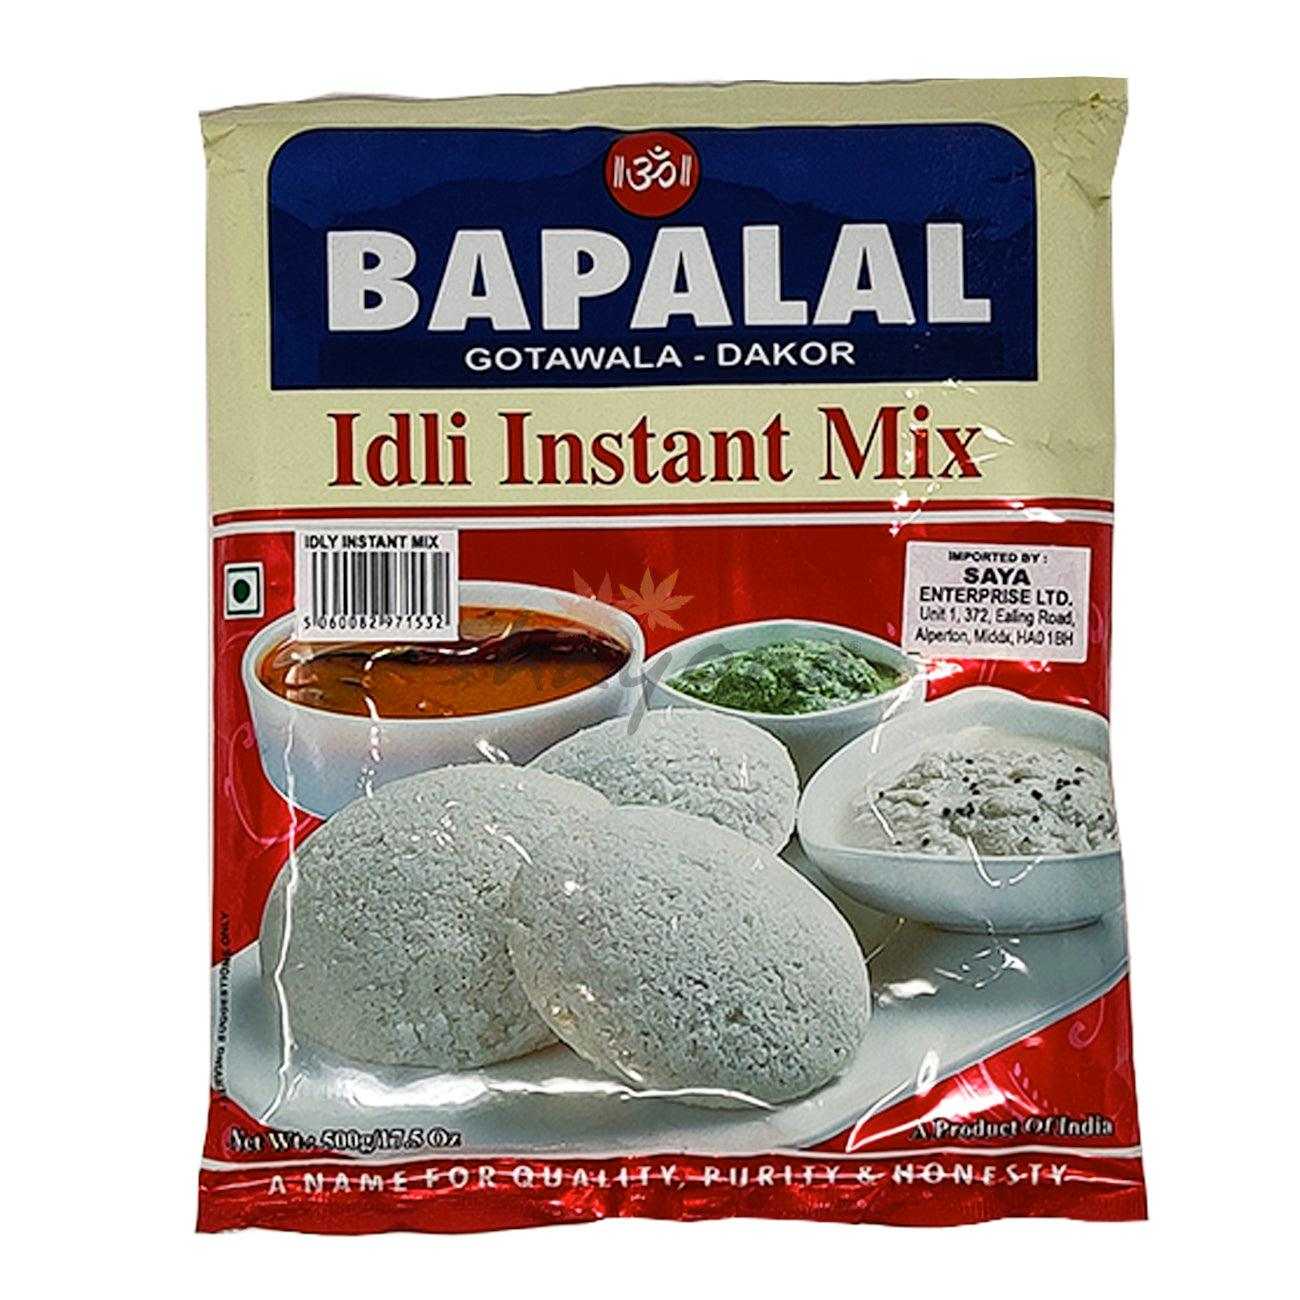 Bapalal Idli Instant Mix